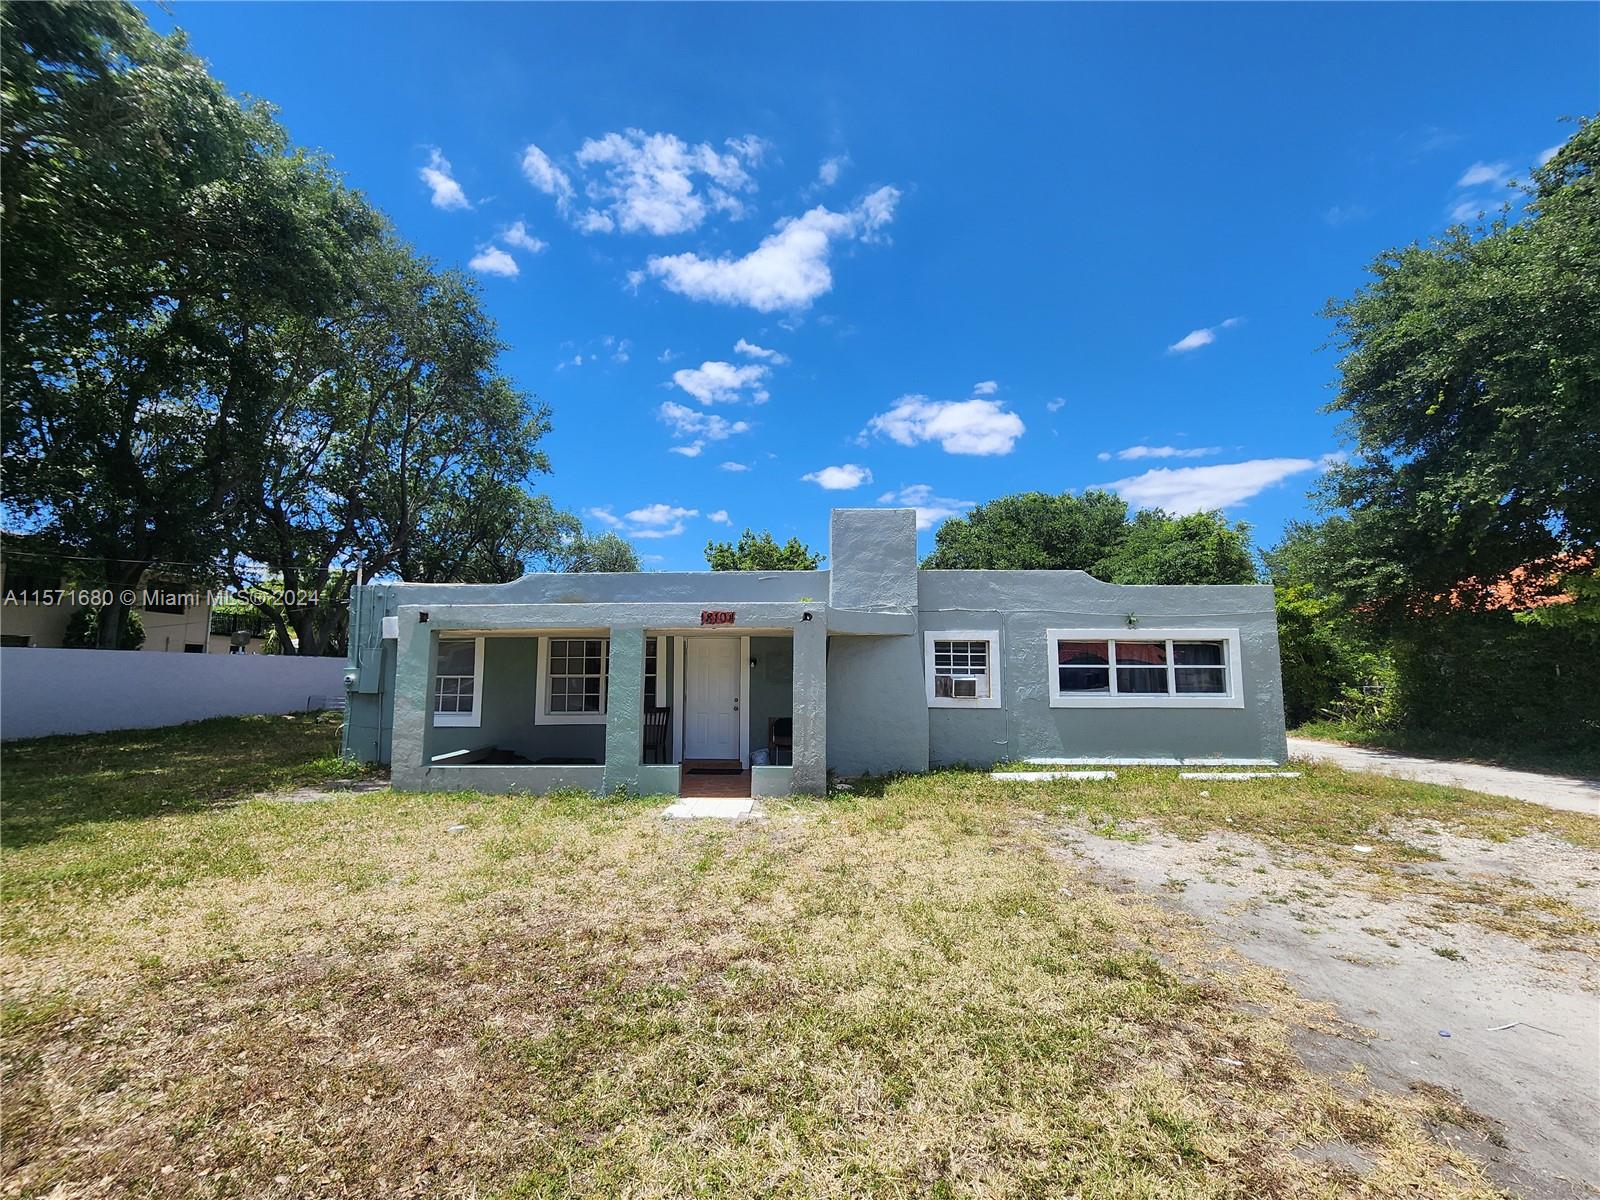 Rental Property at 18104 Nw 19th Ave, Miami Gardens, Broward County, Florida -  - $690,000 MO.